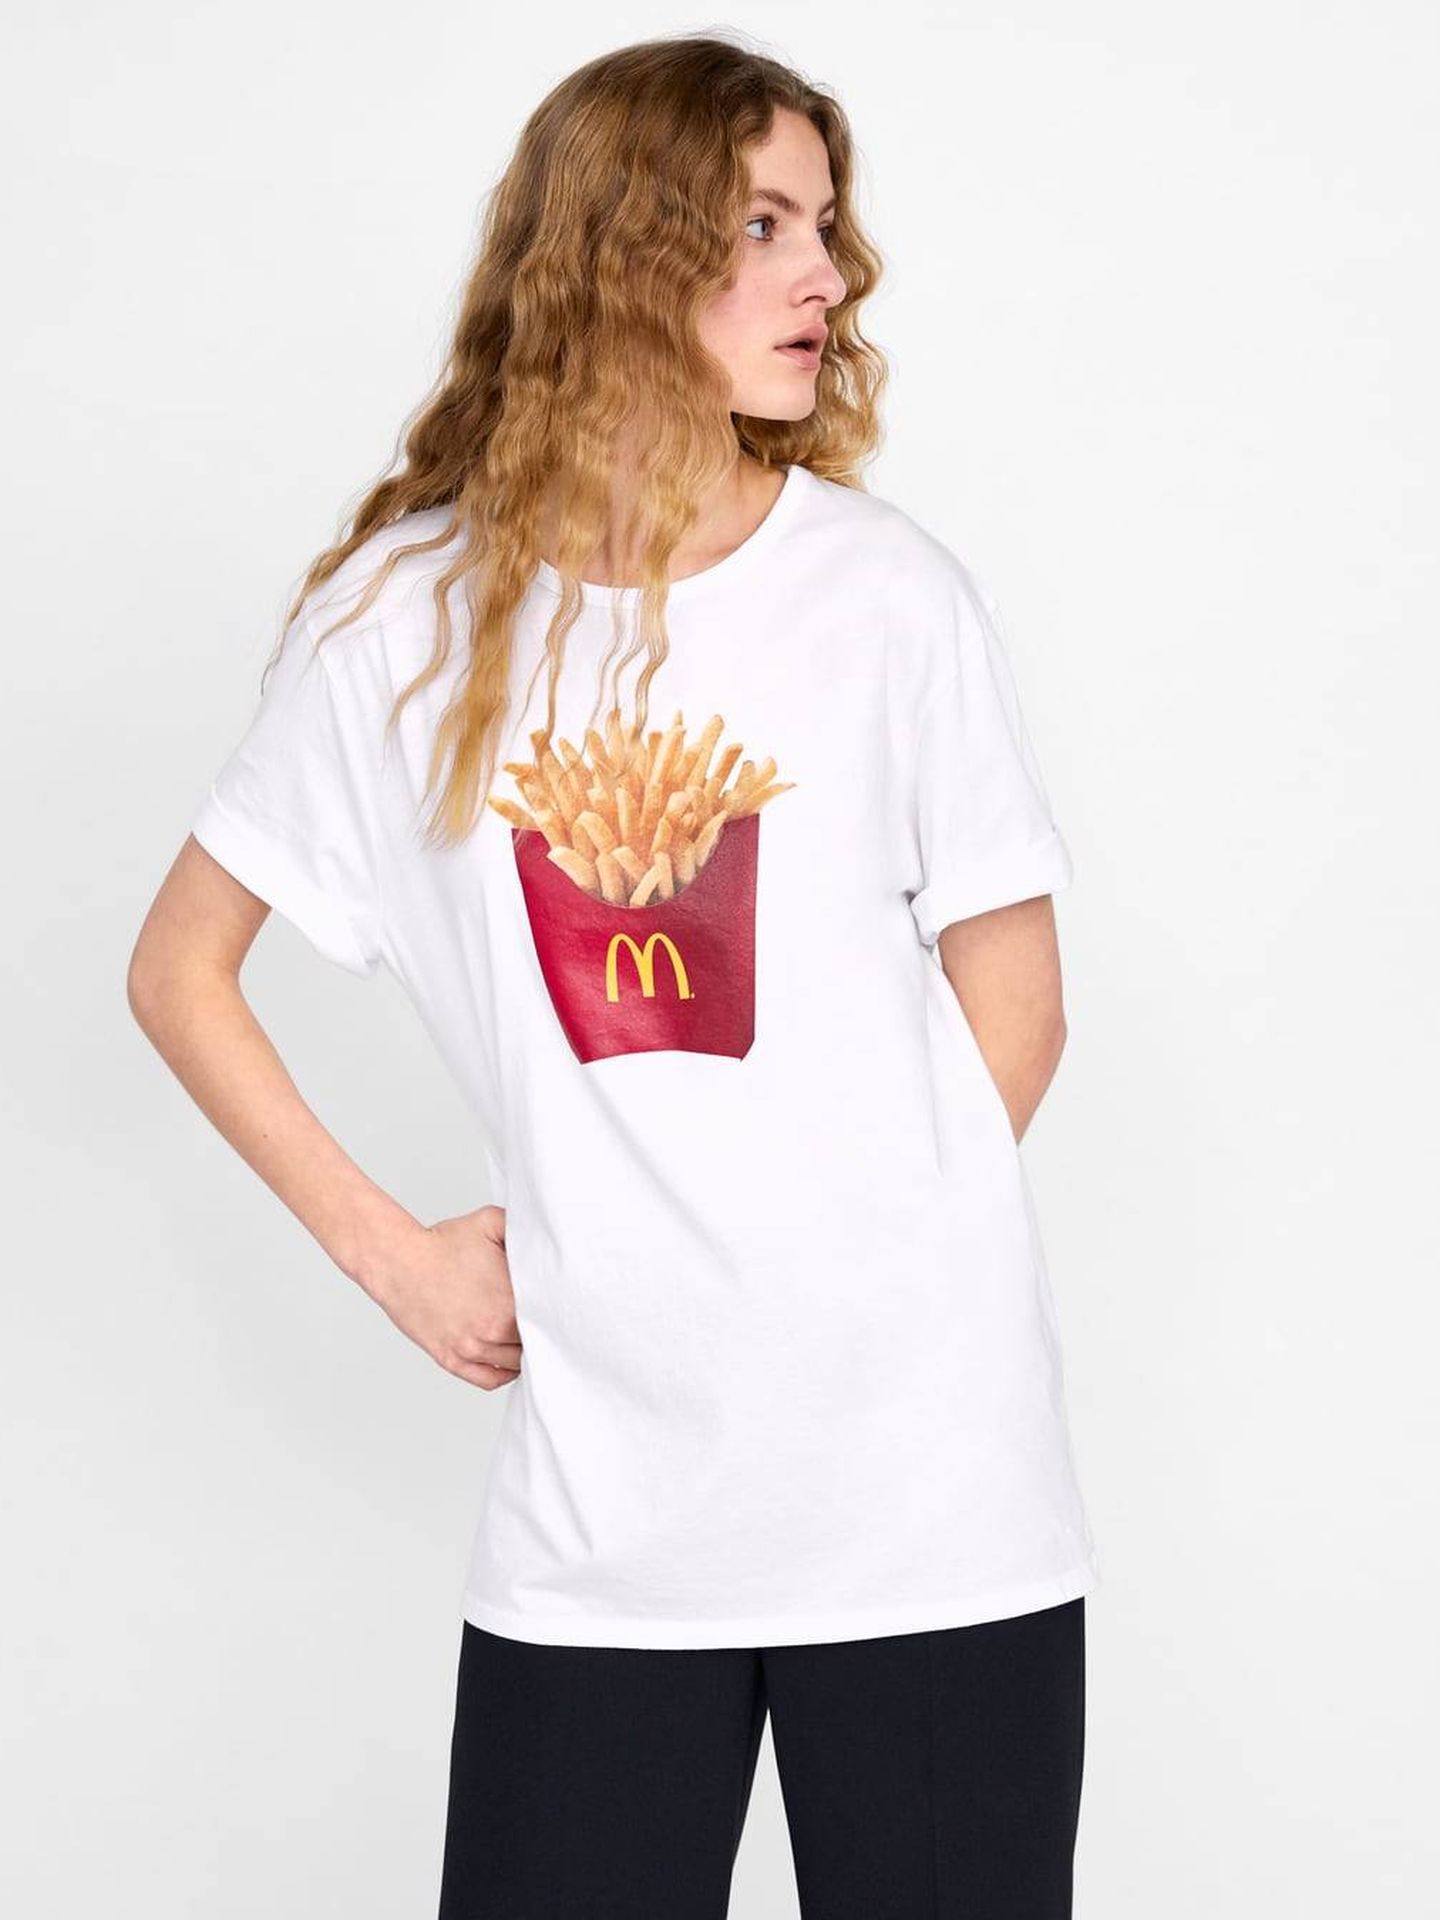 Para comérsela, así es esta camiseta de Zara, 15,95€. (Cortesía)